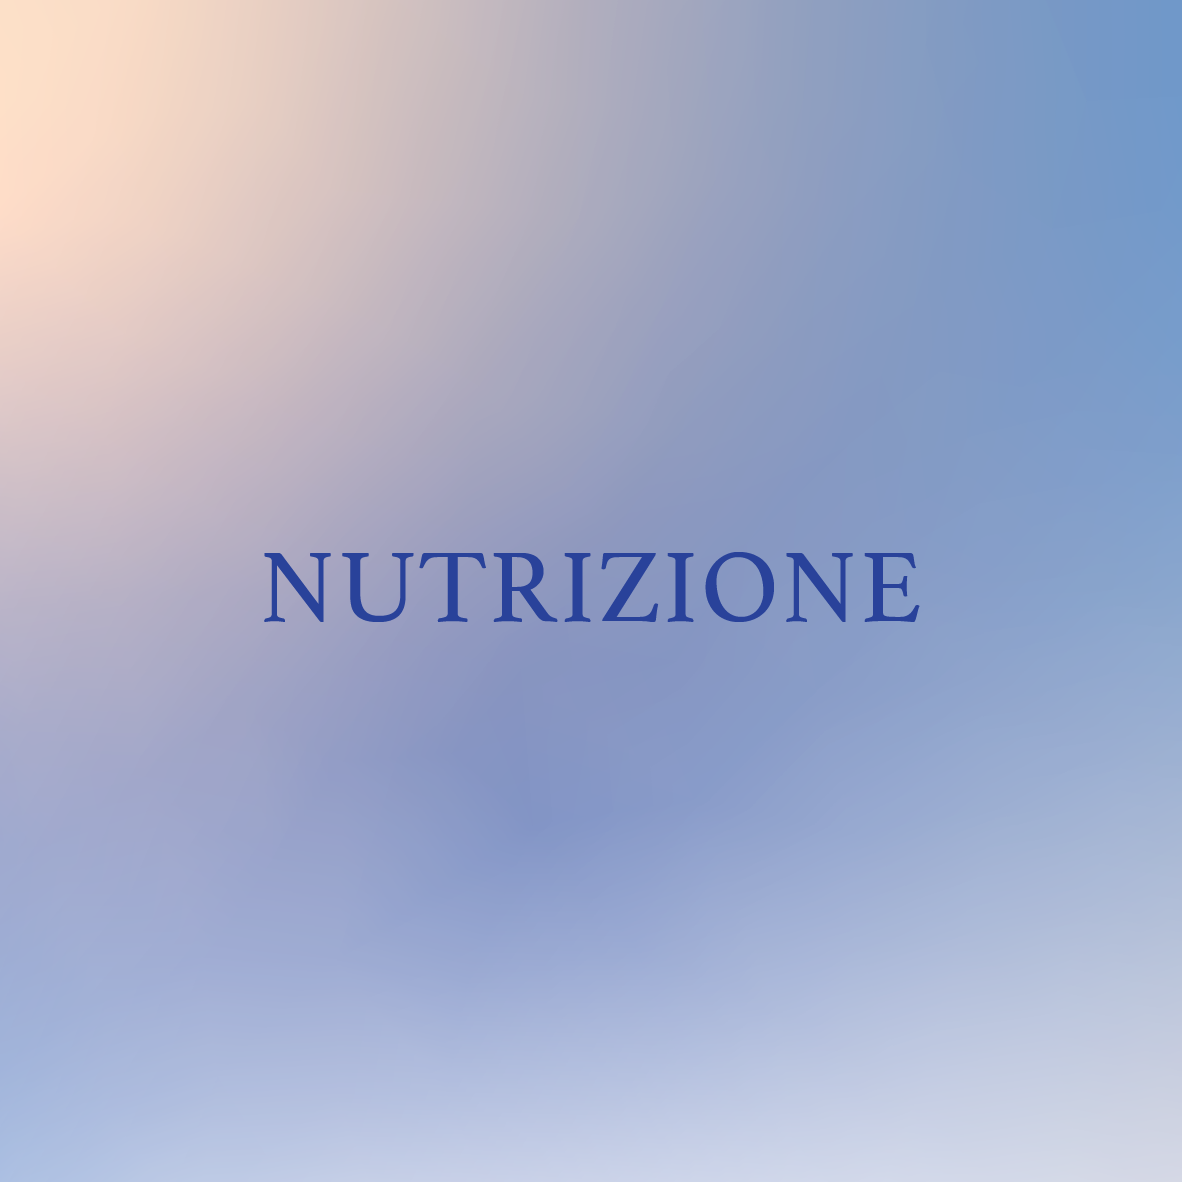 La parola nutrizione è su sfondo blu.